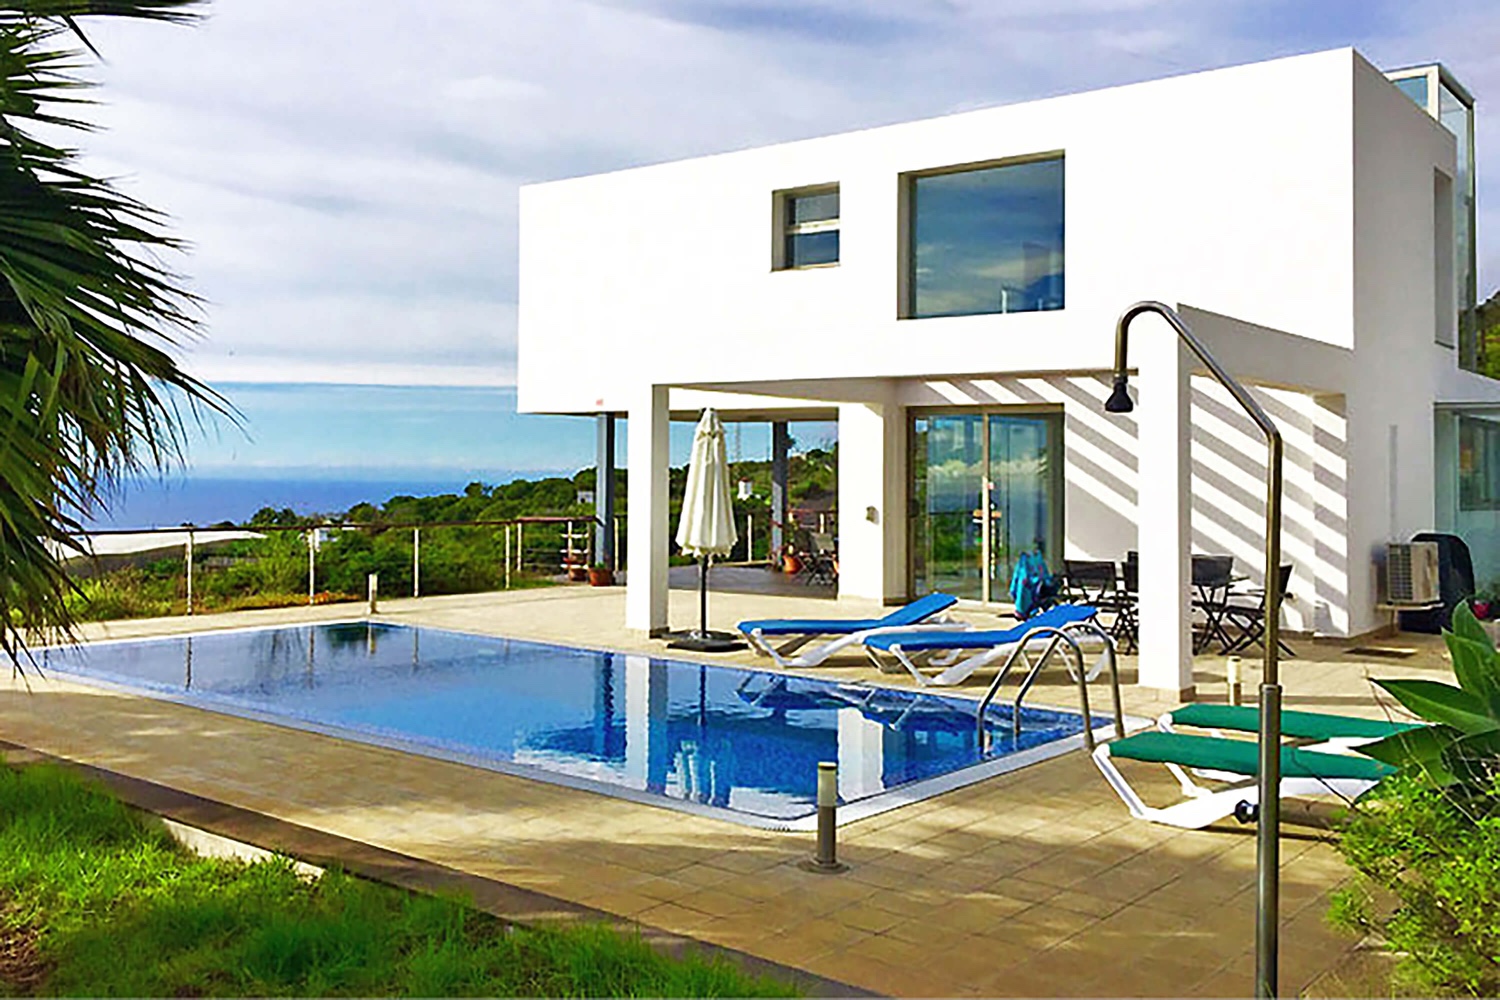 Lujosa casa de vacaciones para alquilar en La Palma de arquitectura moderna con gran piscina y hermosas vistas panorámicas al mar